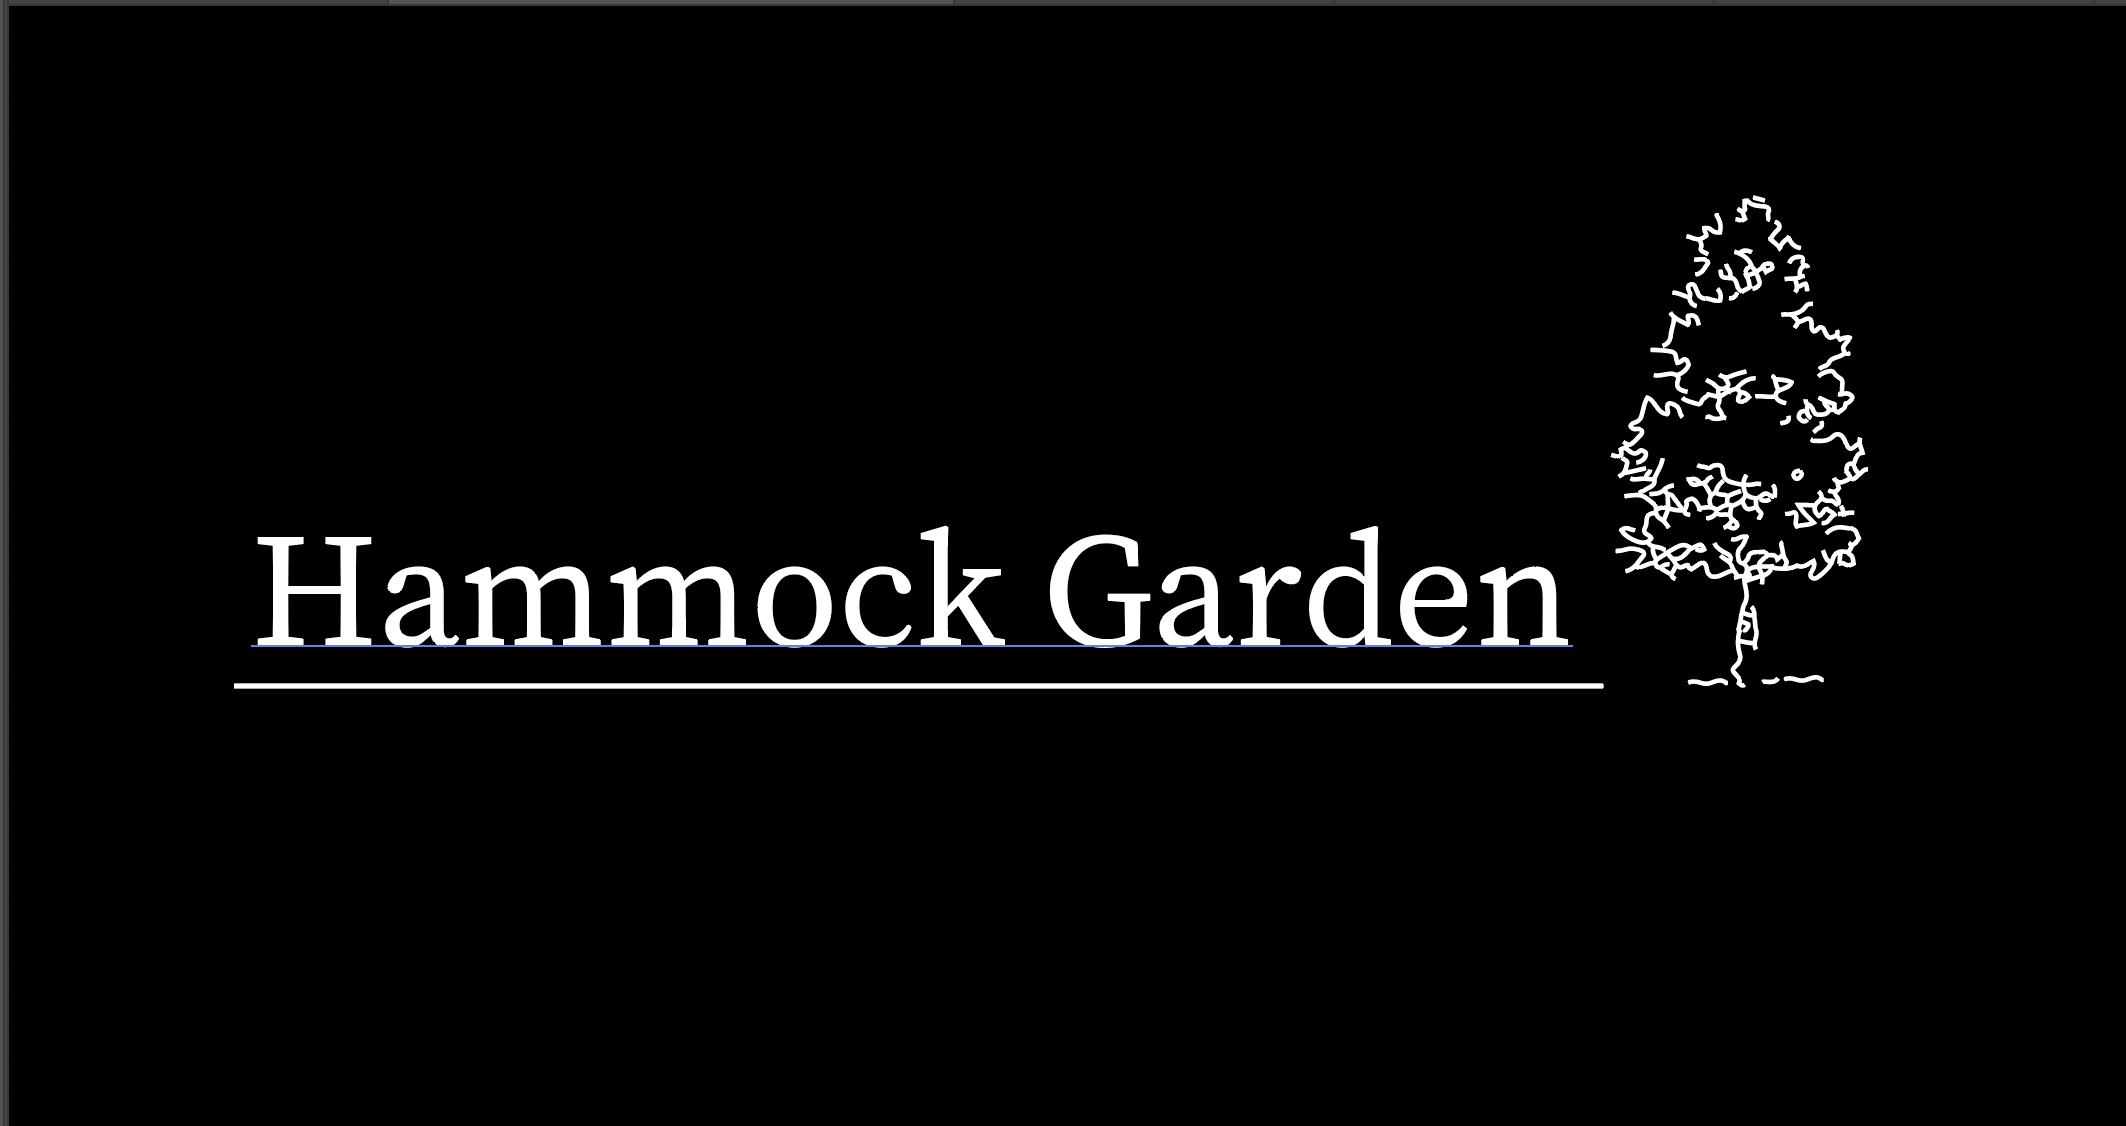 Hammock Garden